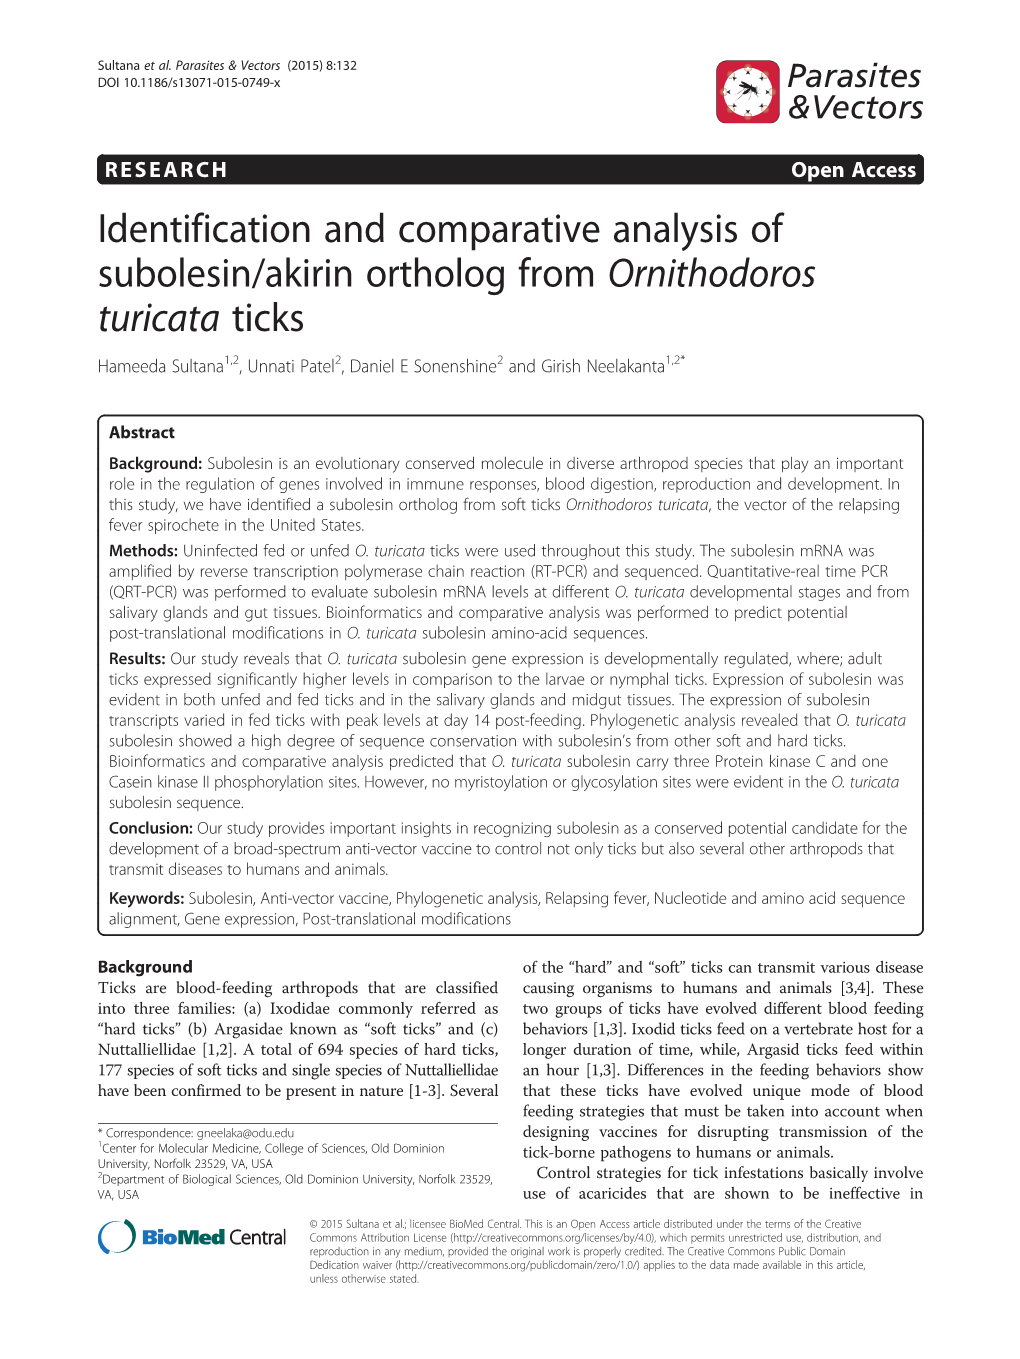 Identification and Comparative Analysis of Subolesin/Akirin Ortholog